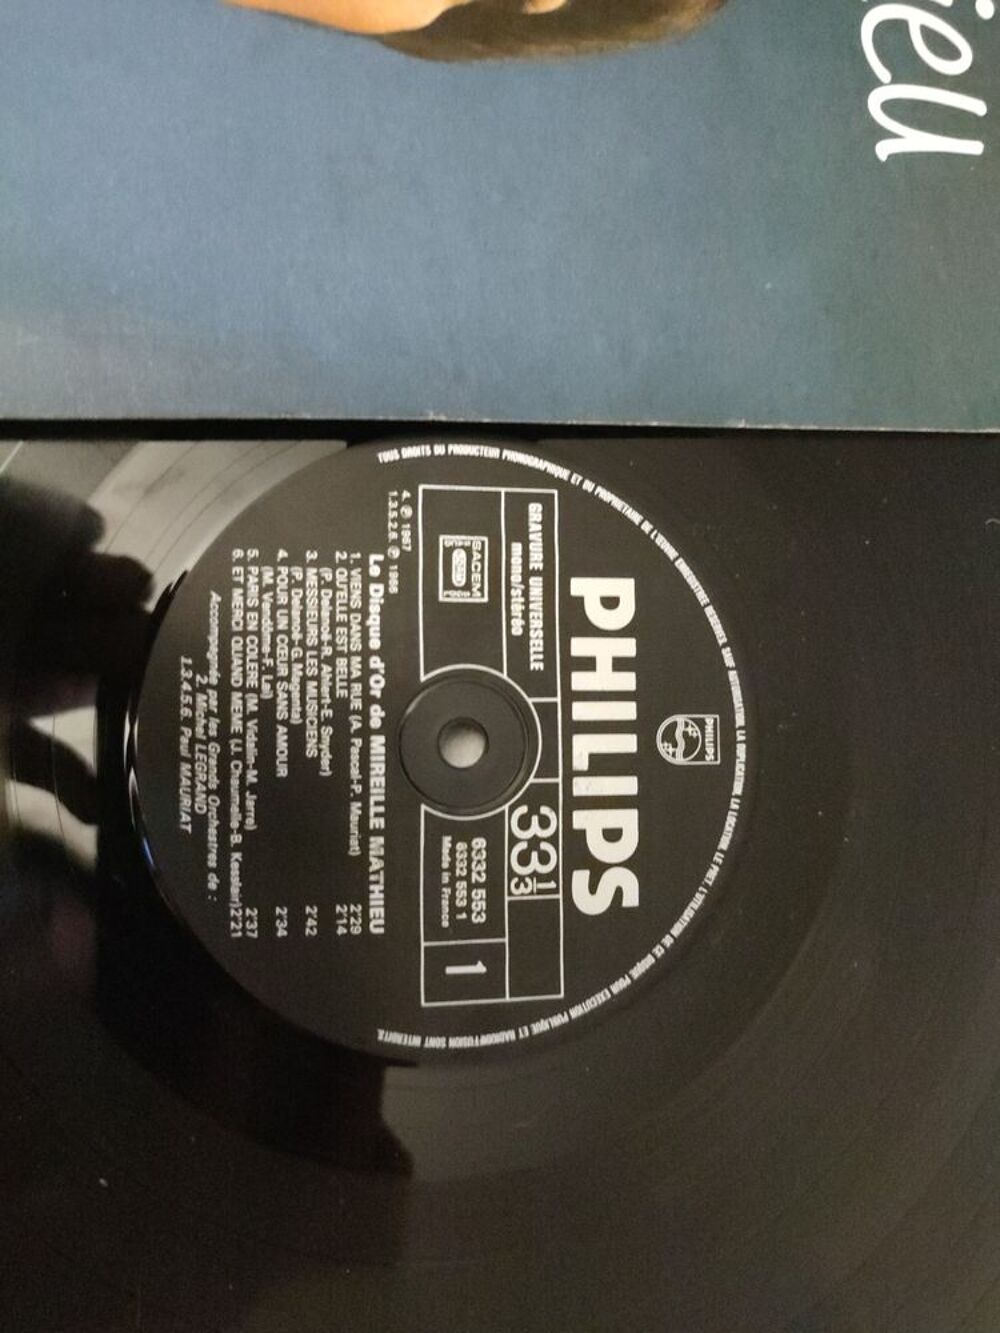 Vinyle de Mireille Mathieu Le Disque d'or Audio et hifi